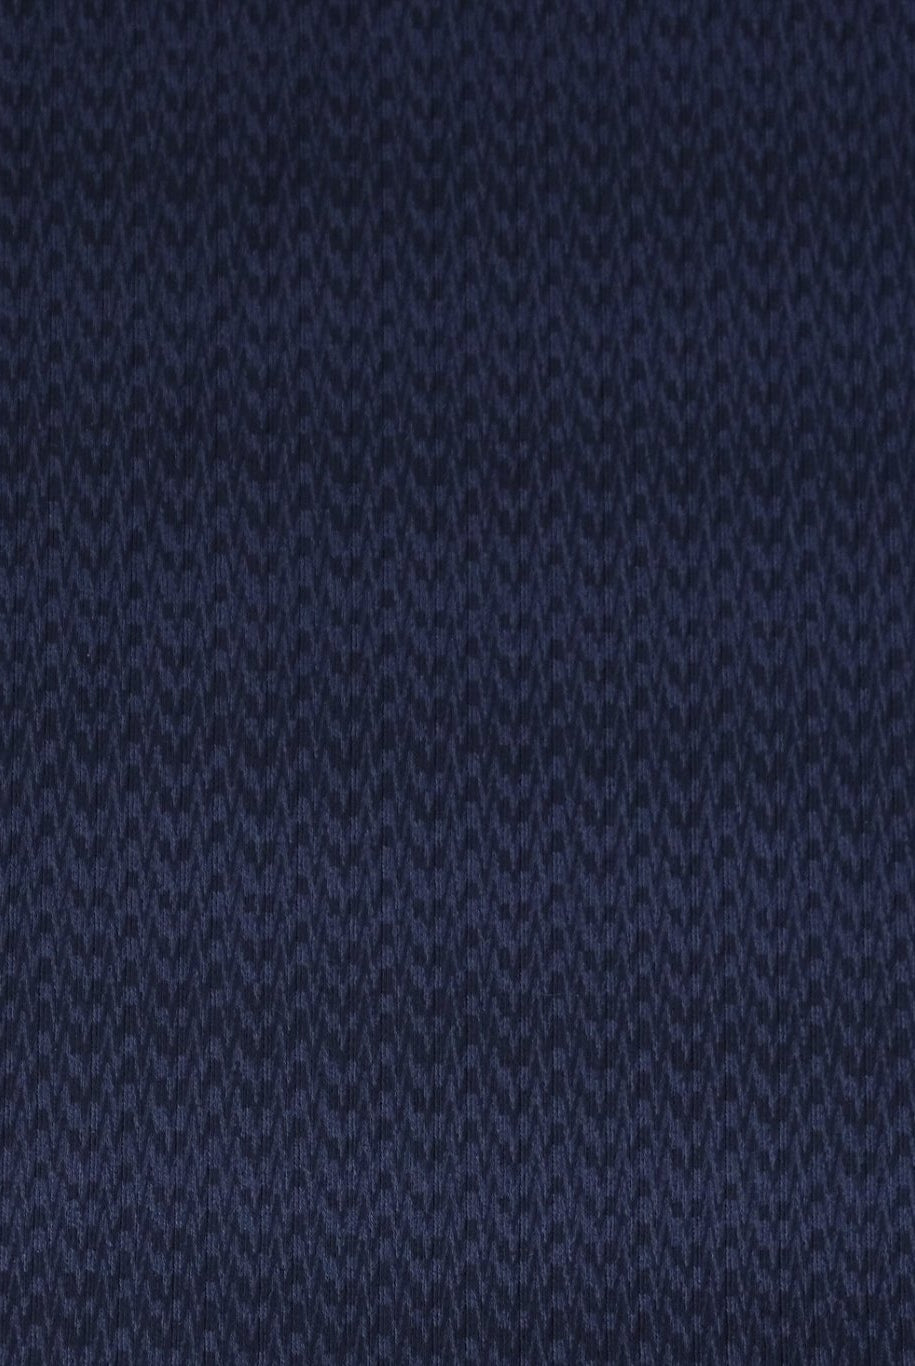 1 Yard- Last Cut! Navy Rhythm, Athletic Knit. ATH-123 - Boho Fabrics